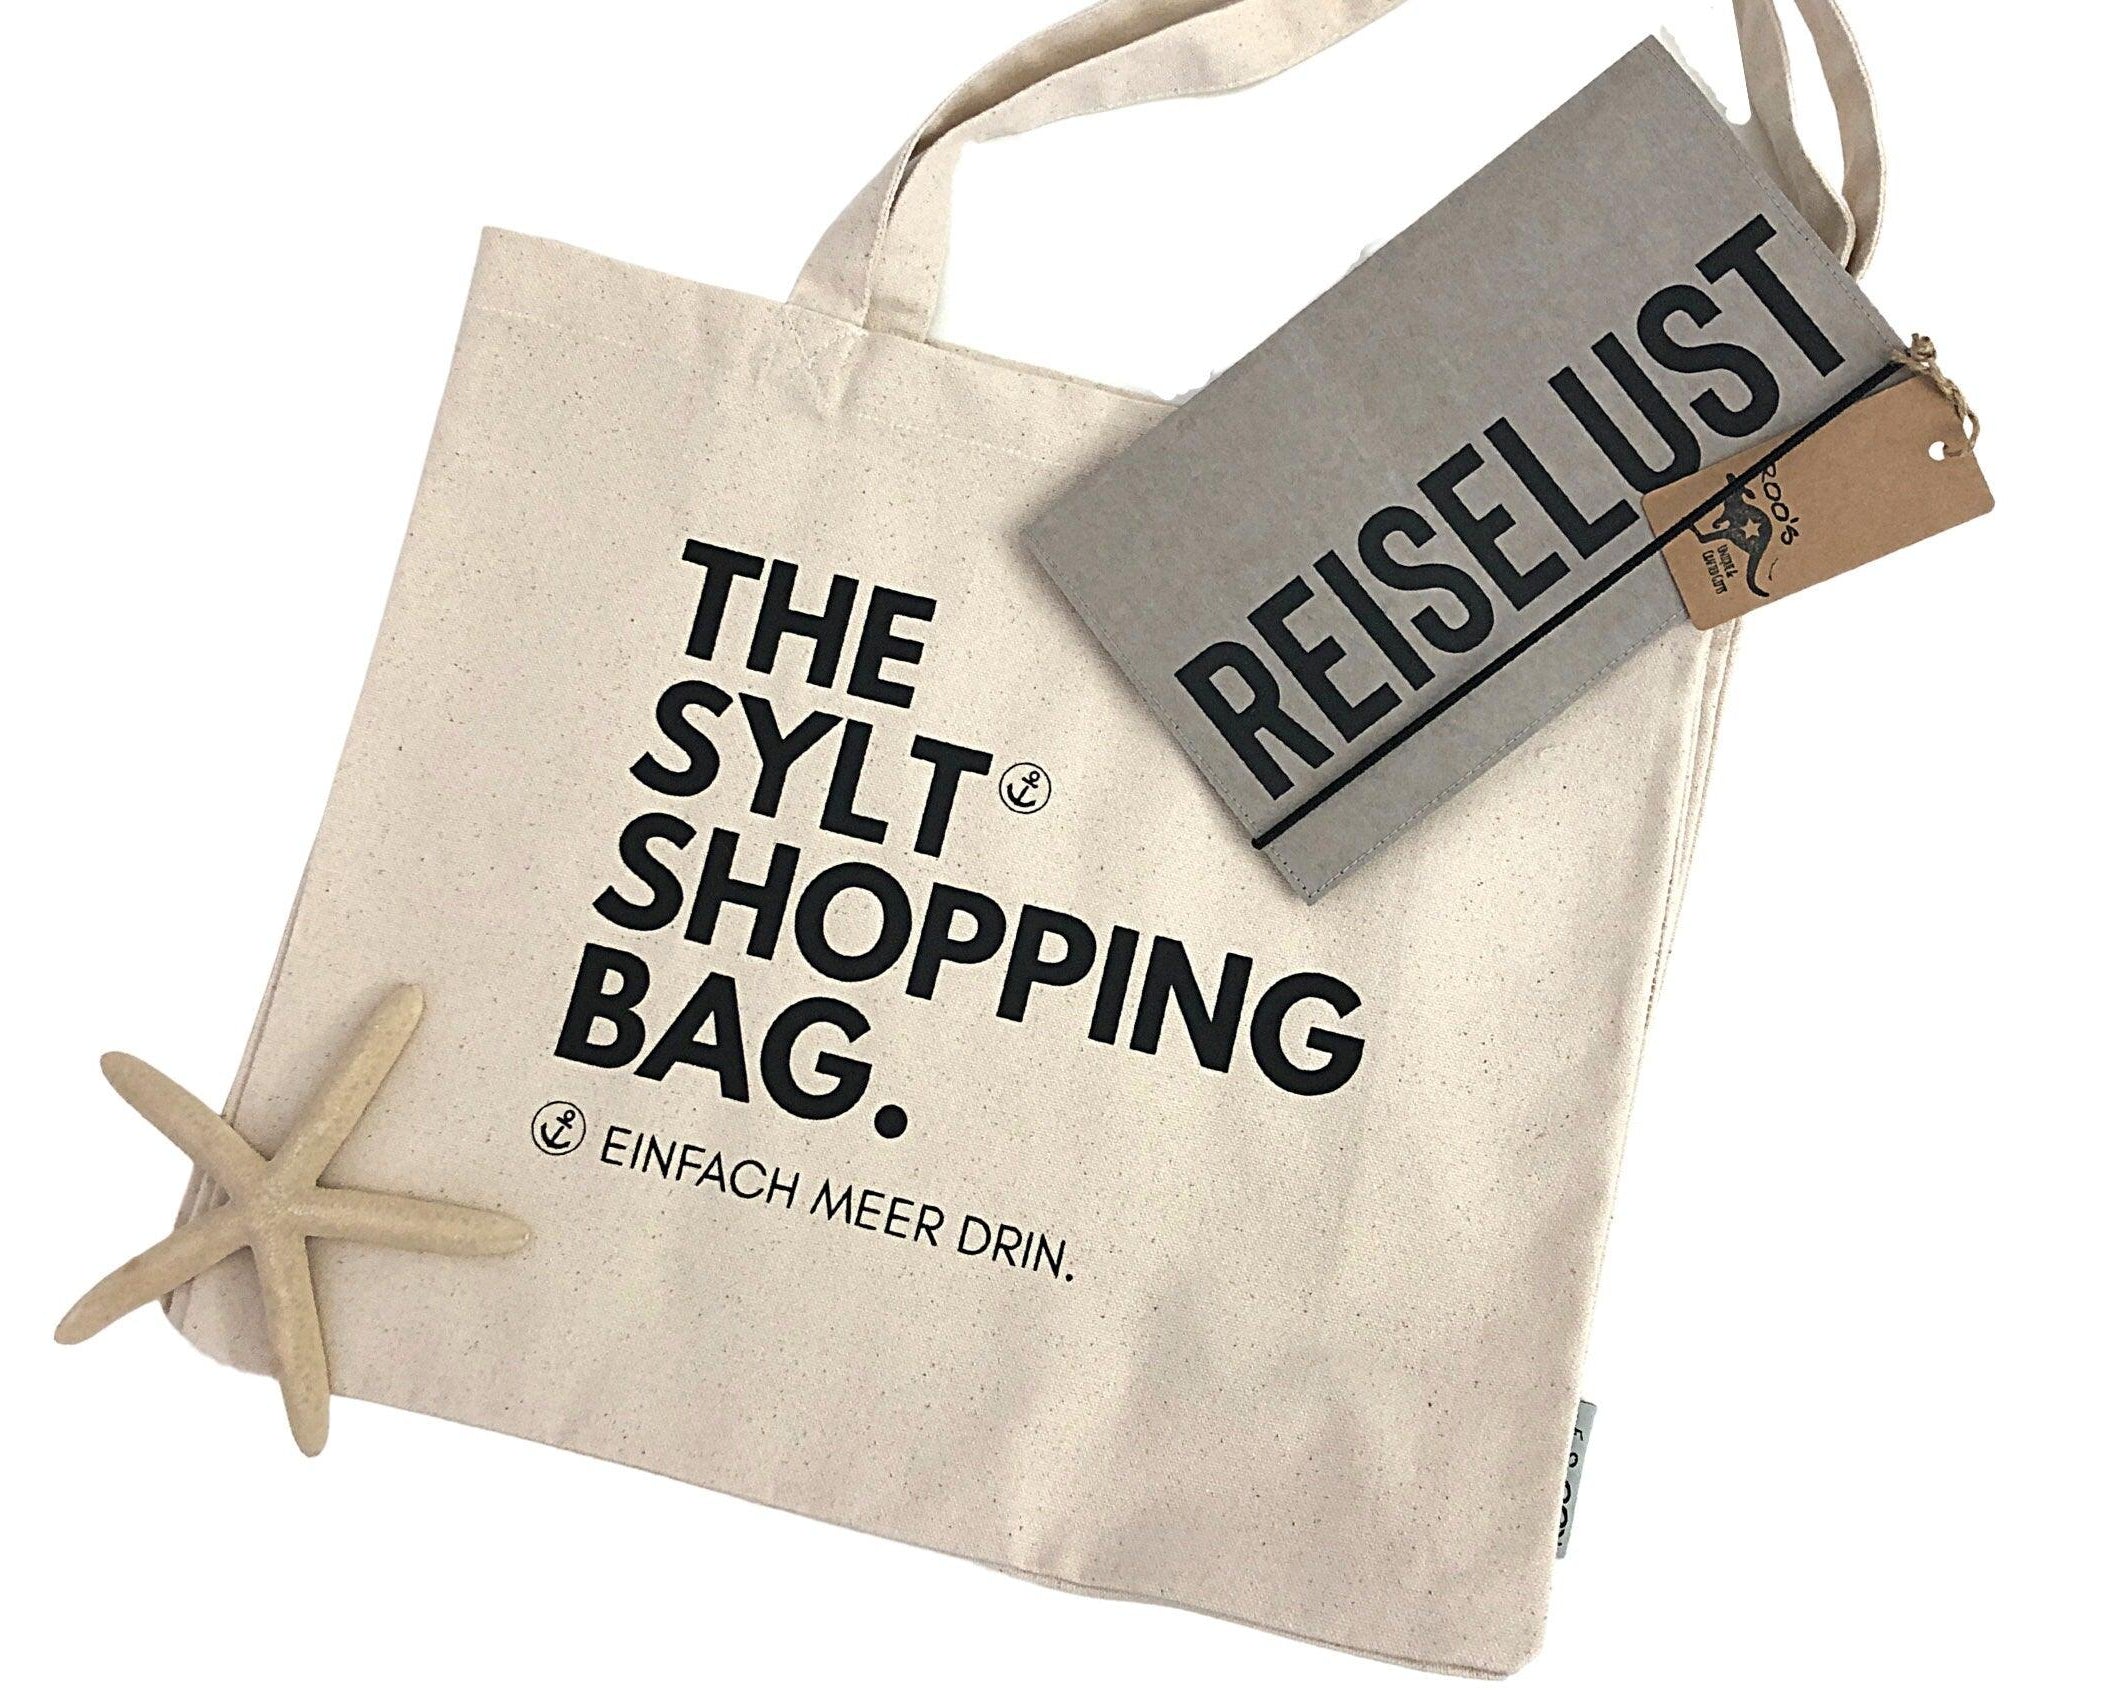 Tasche | personalisierte Strandtasche mit Namen - Roo's Gift Shop